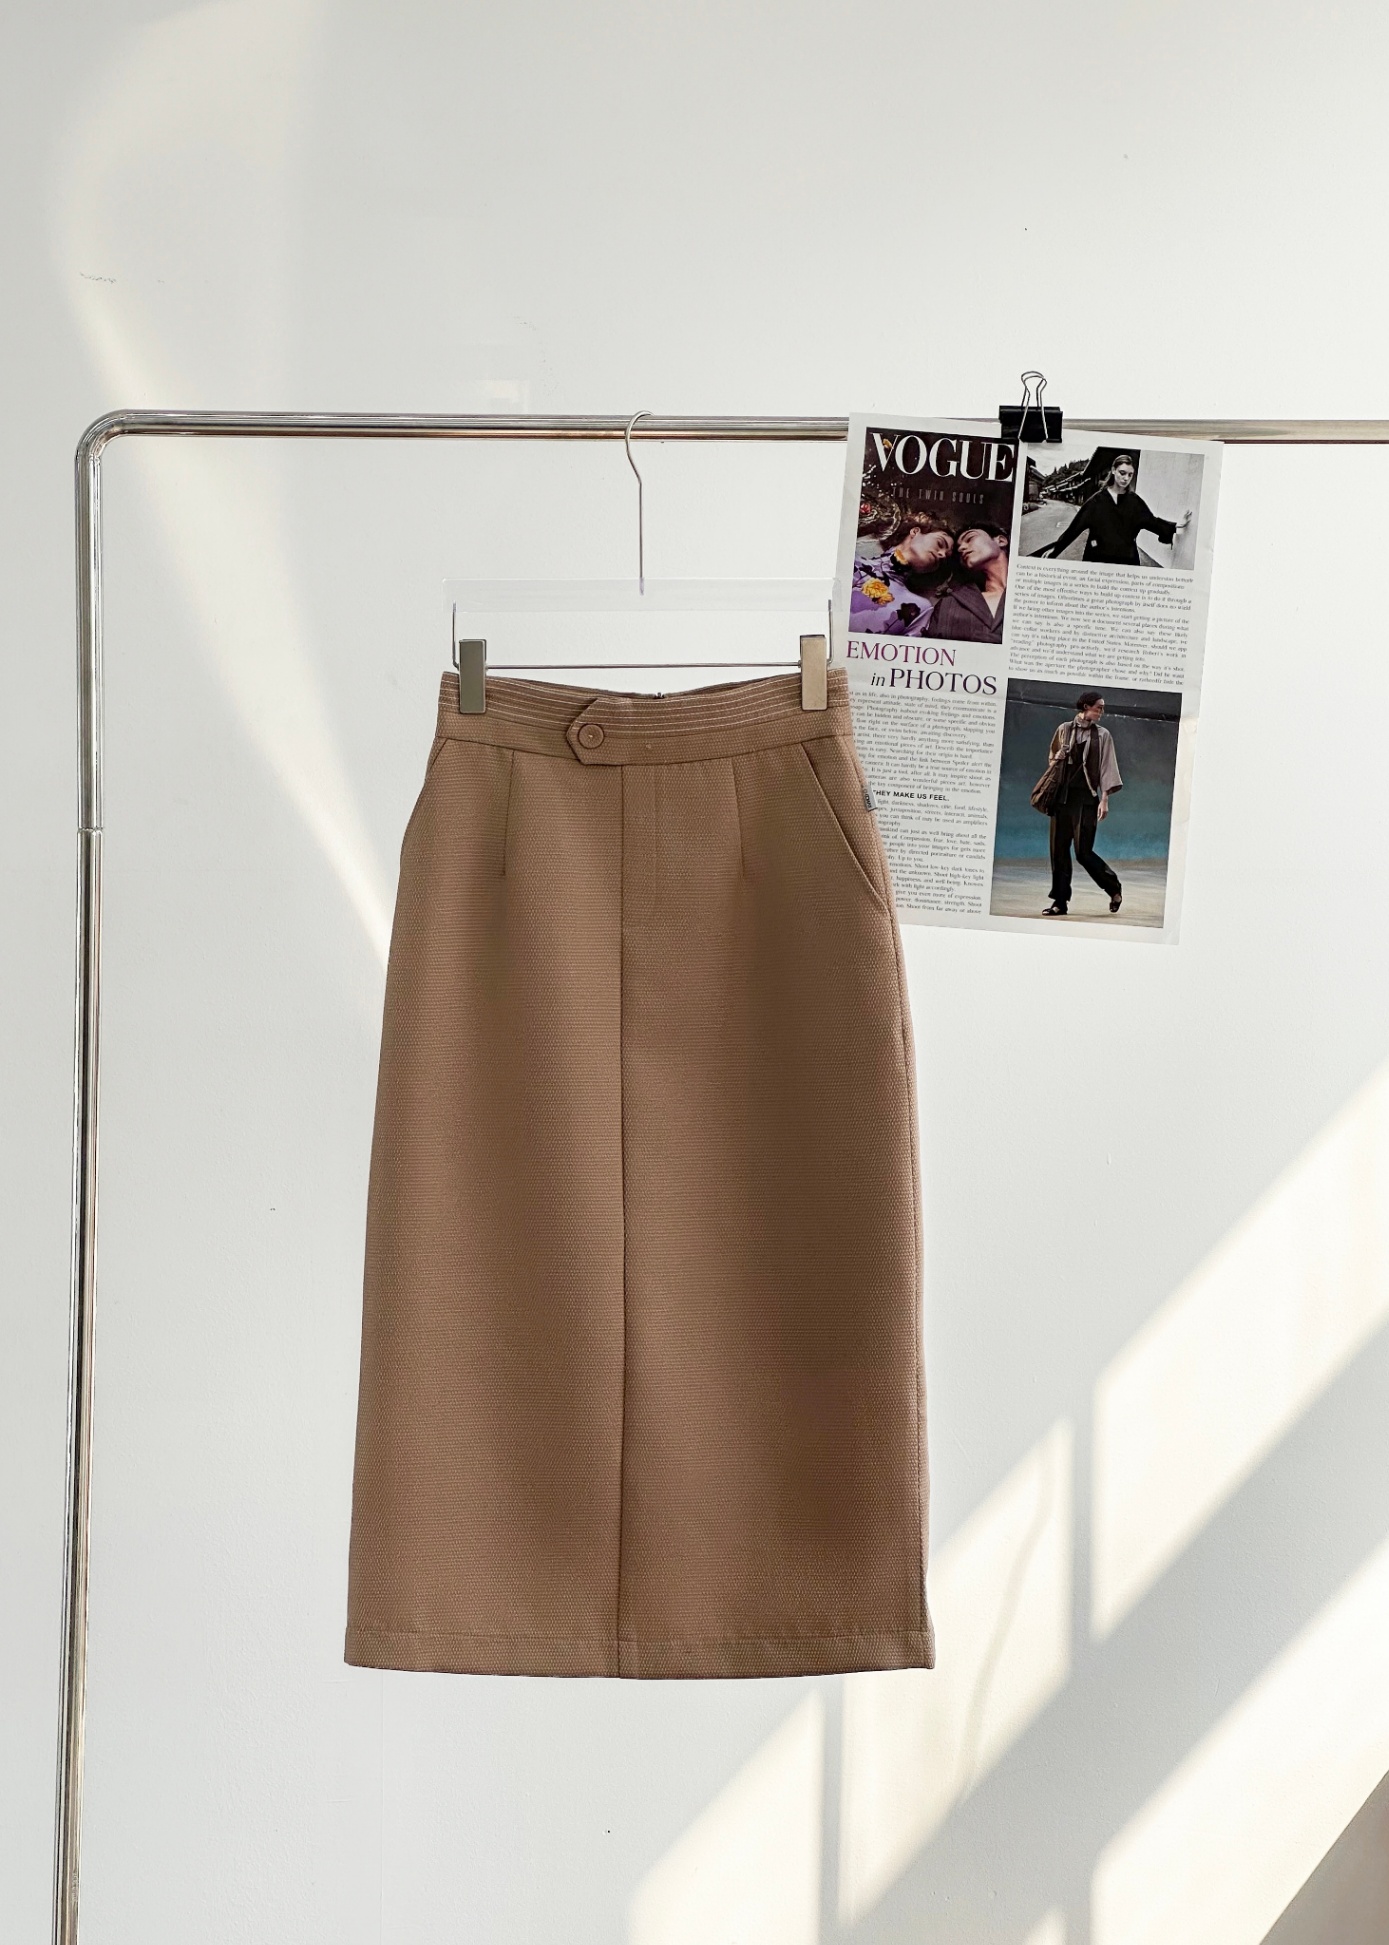 Mua Online Chân váy Vintage 2 lớp Siêu Xinh 2 Màu | Khuyến mãi giá rẻ  72.000 đ